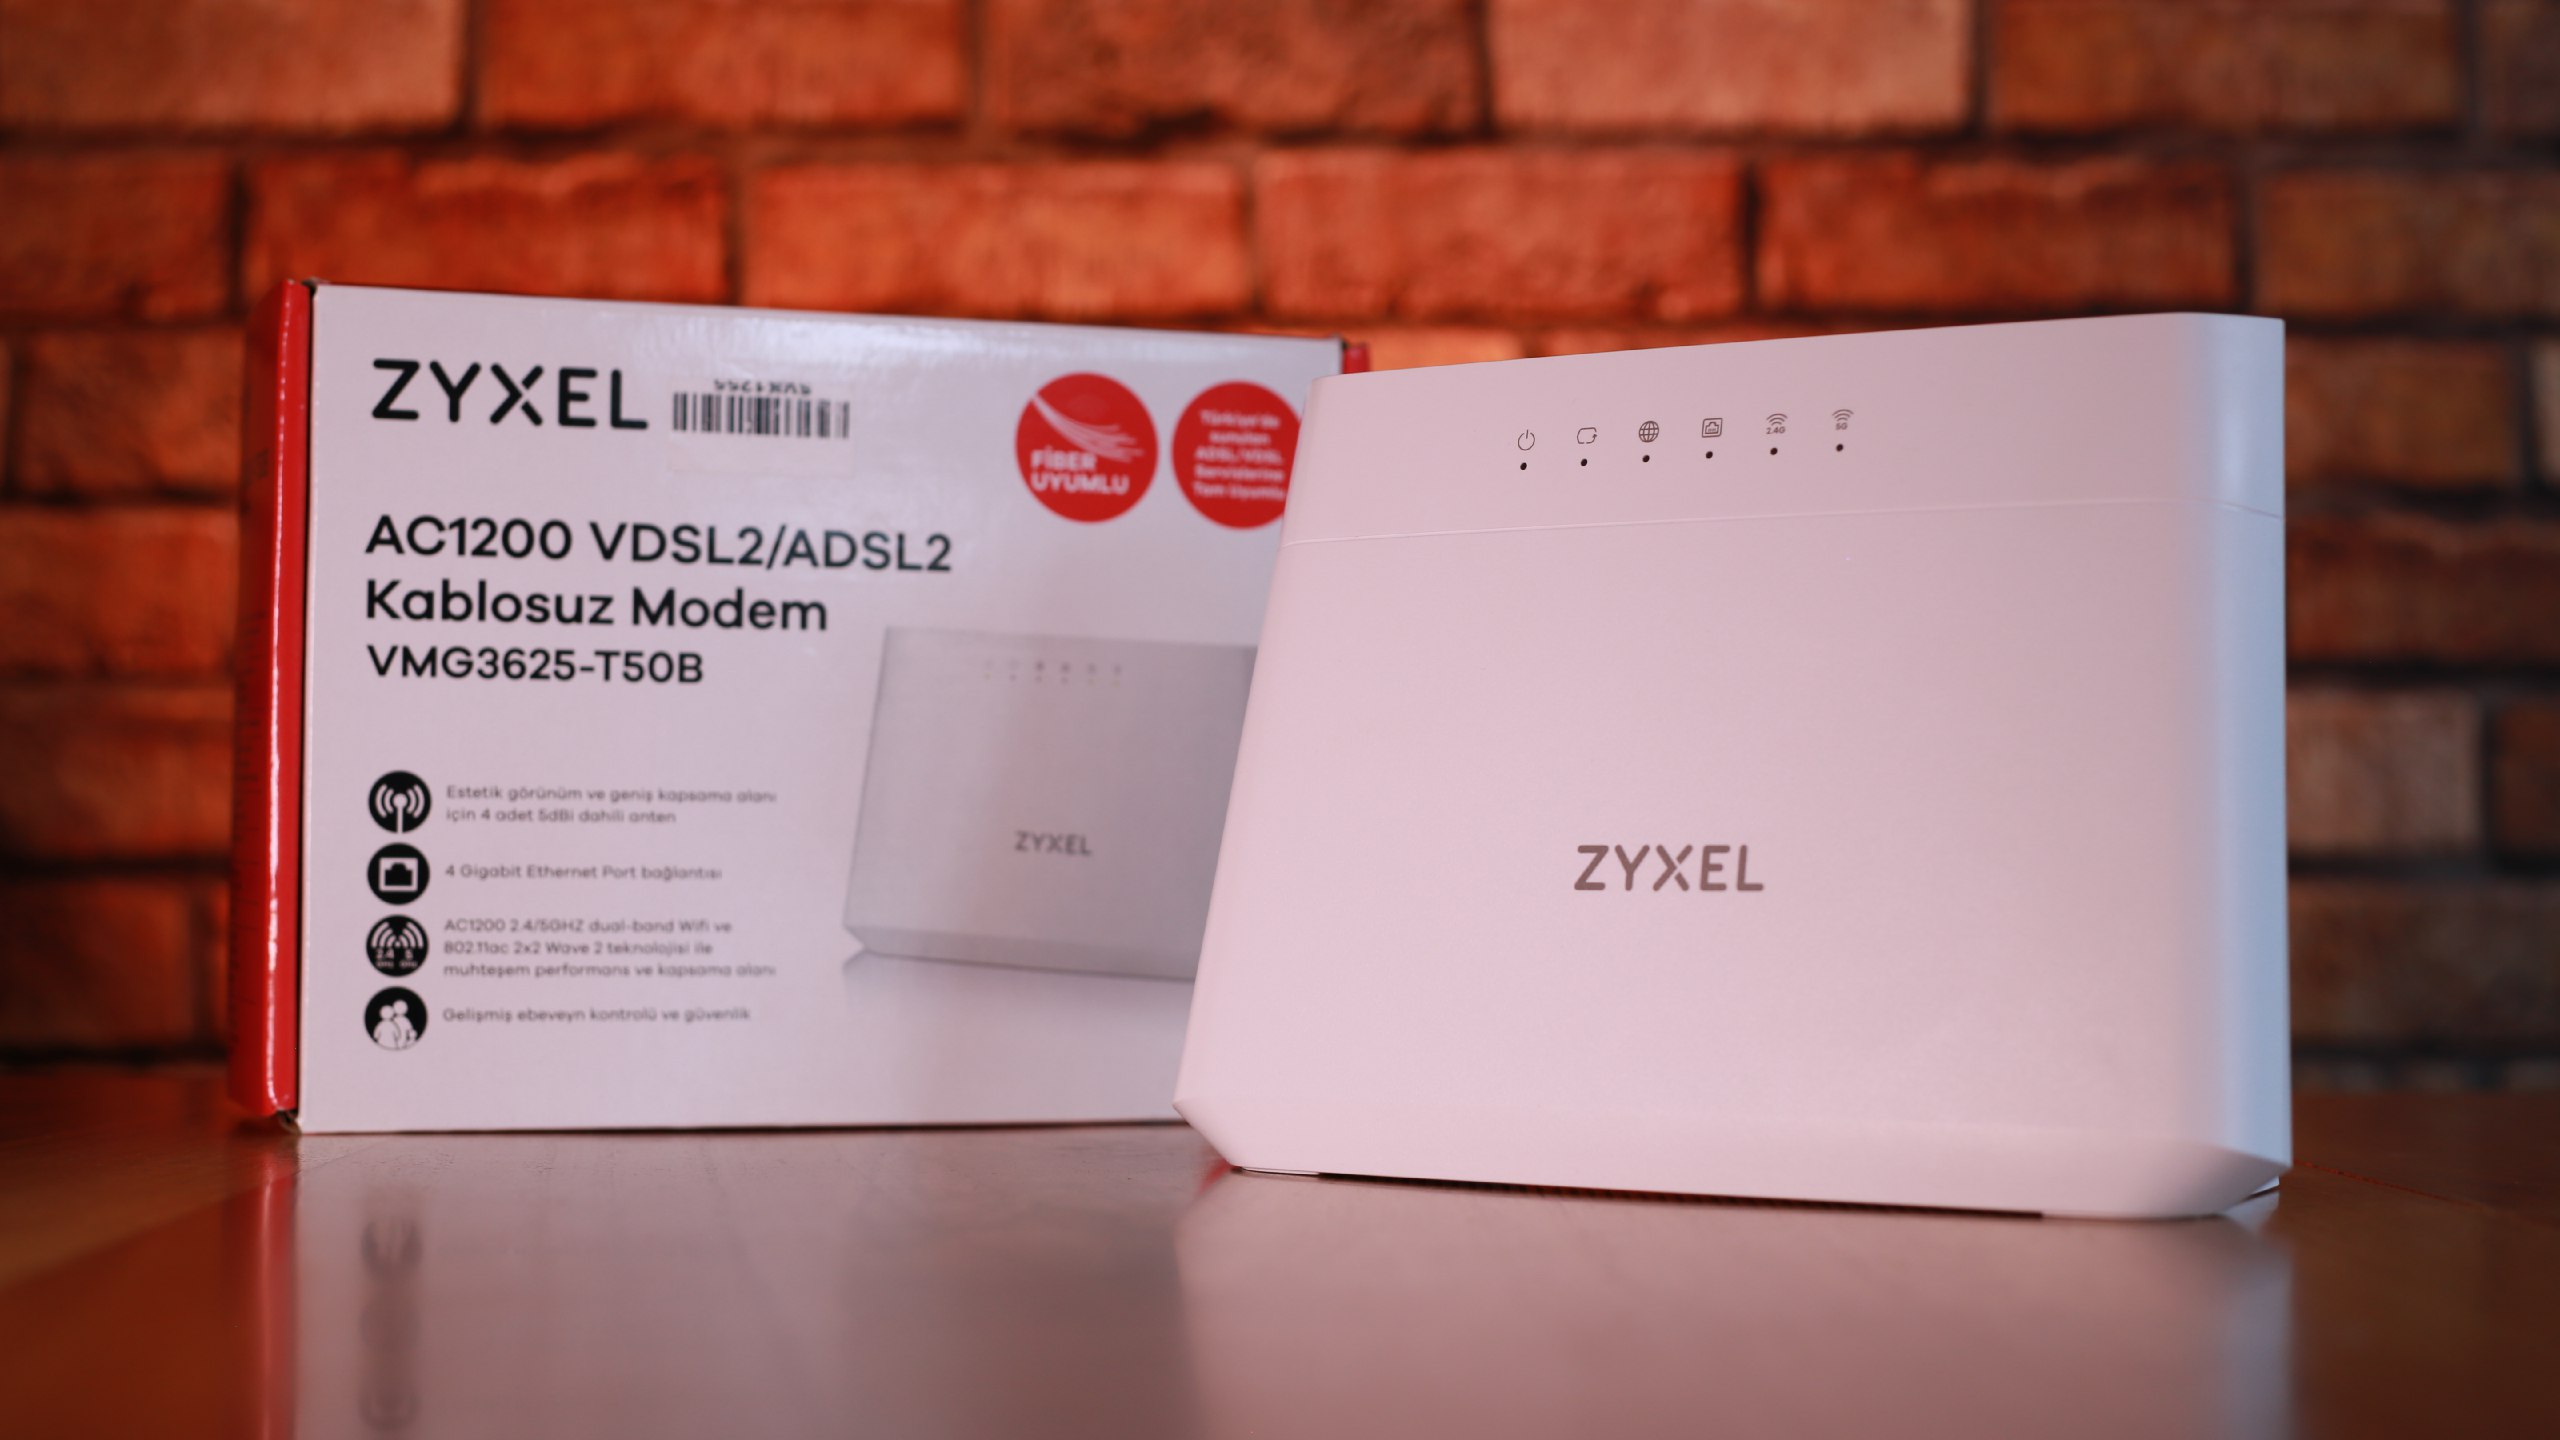 Zyxel WMG3625-T50B modem